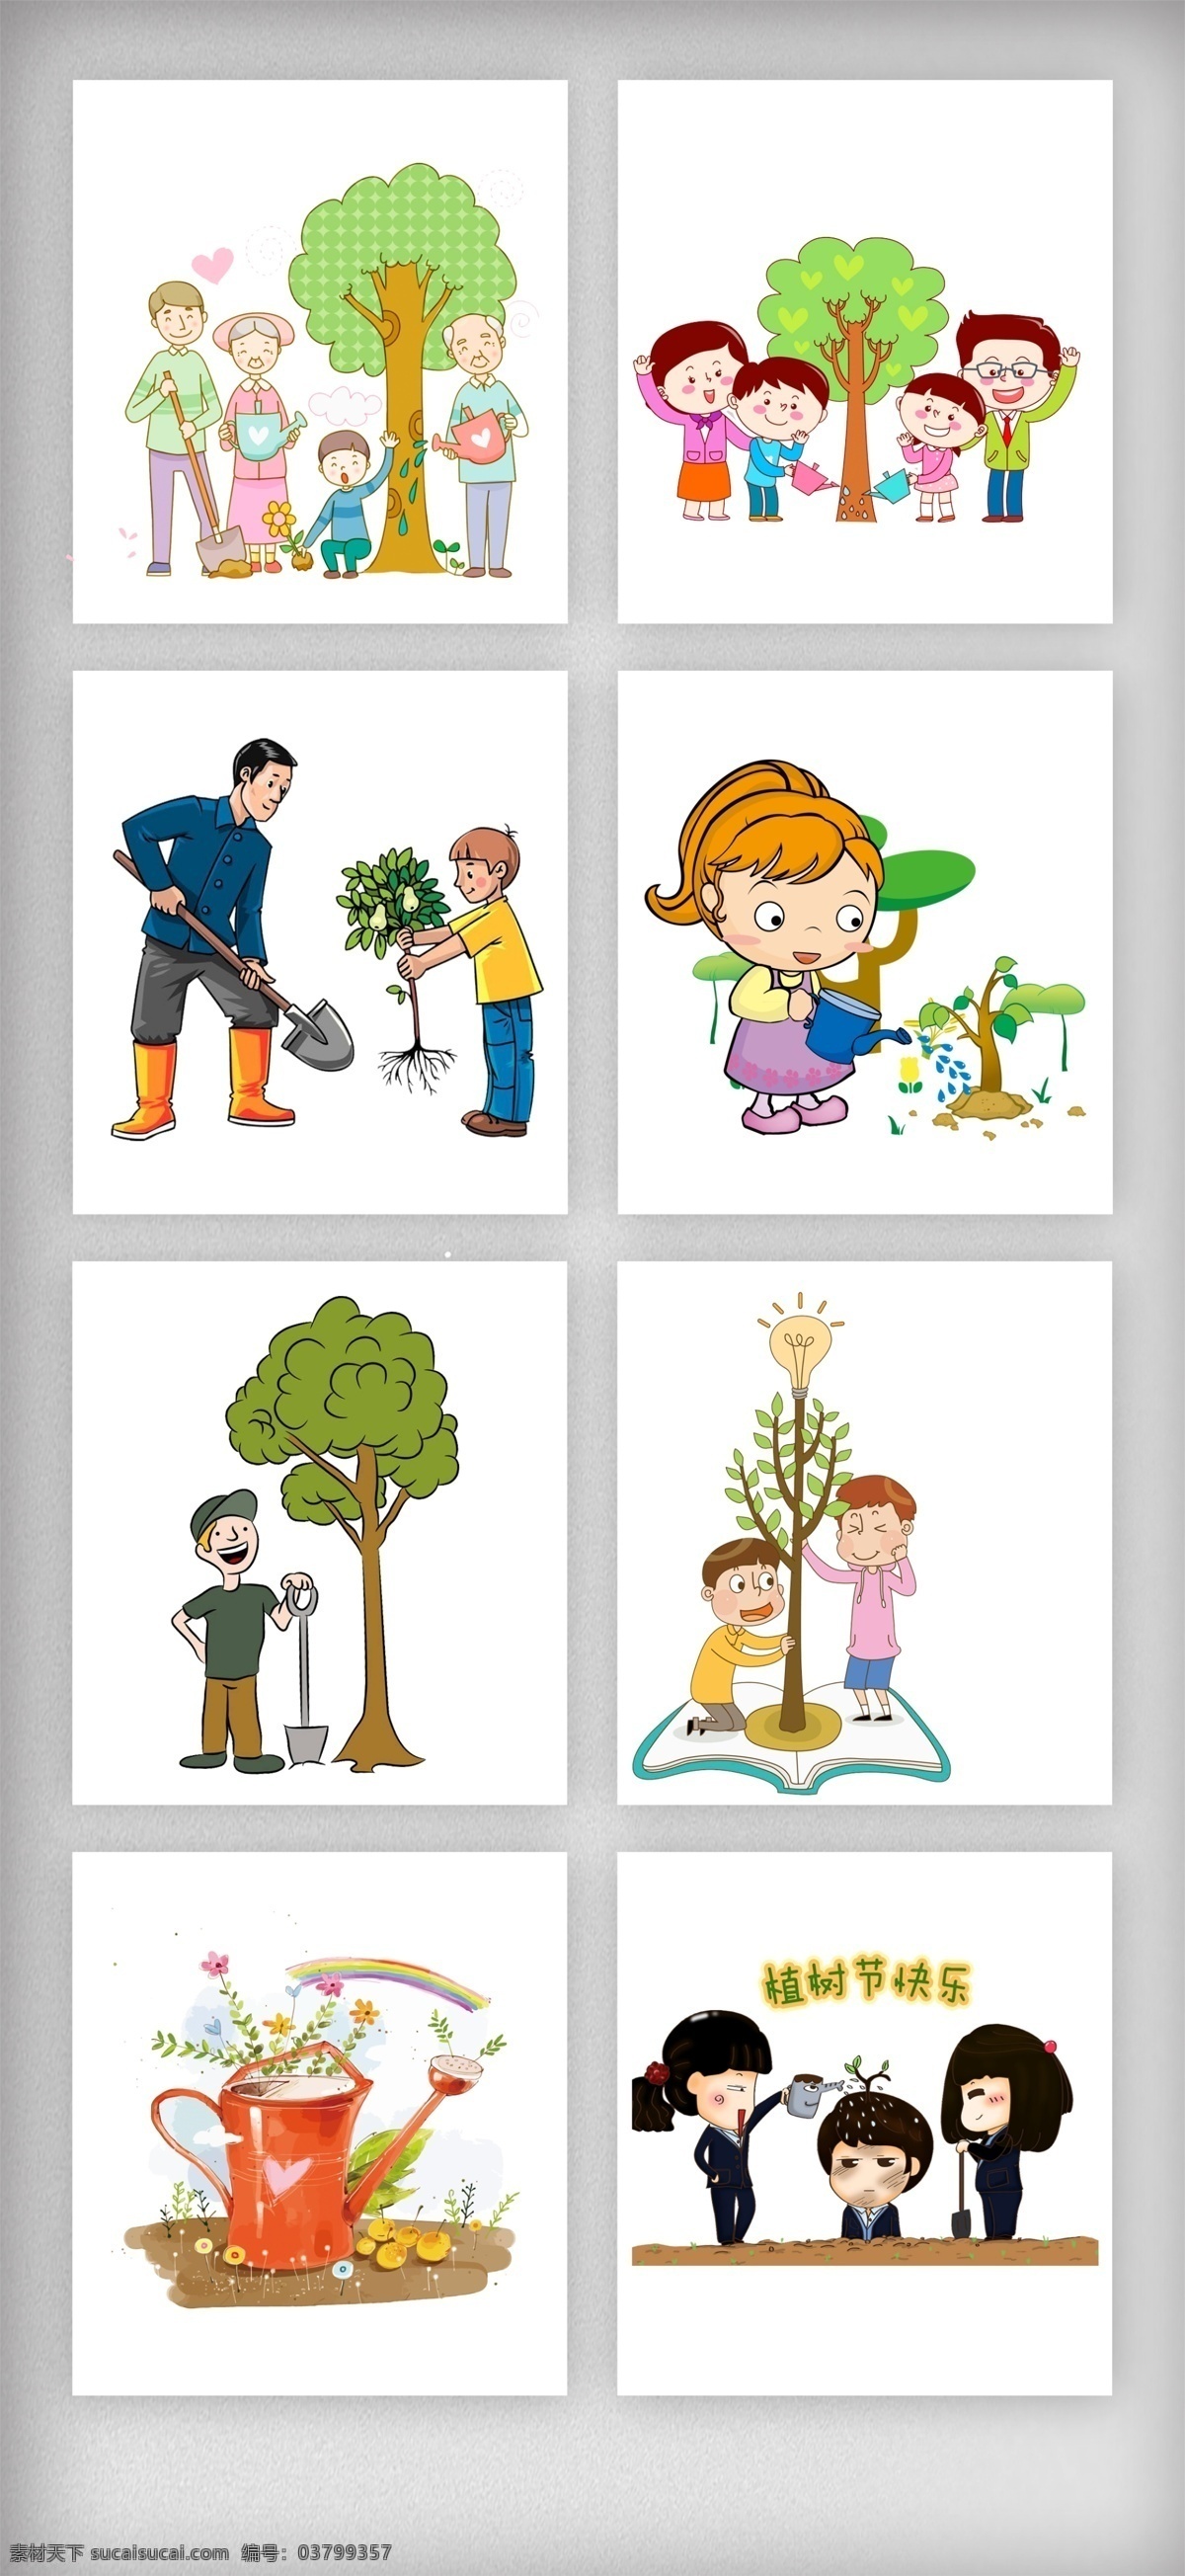 卡通 植树节 装饰 元素 卡通儿童 种植 保护地球 环境保护 小树苗 栽树 公益日 植树节png 设计素材 环保建设 免 抠